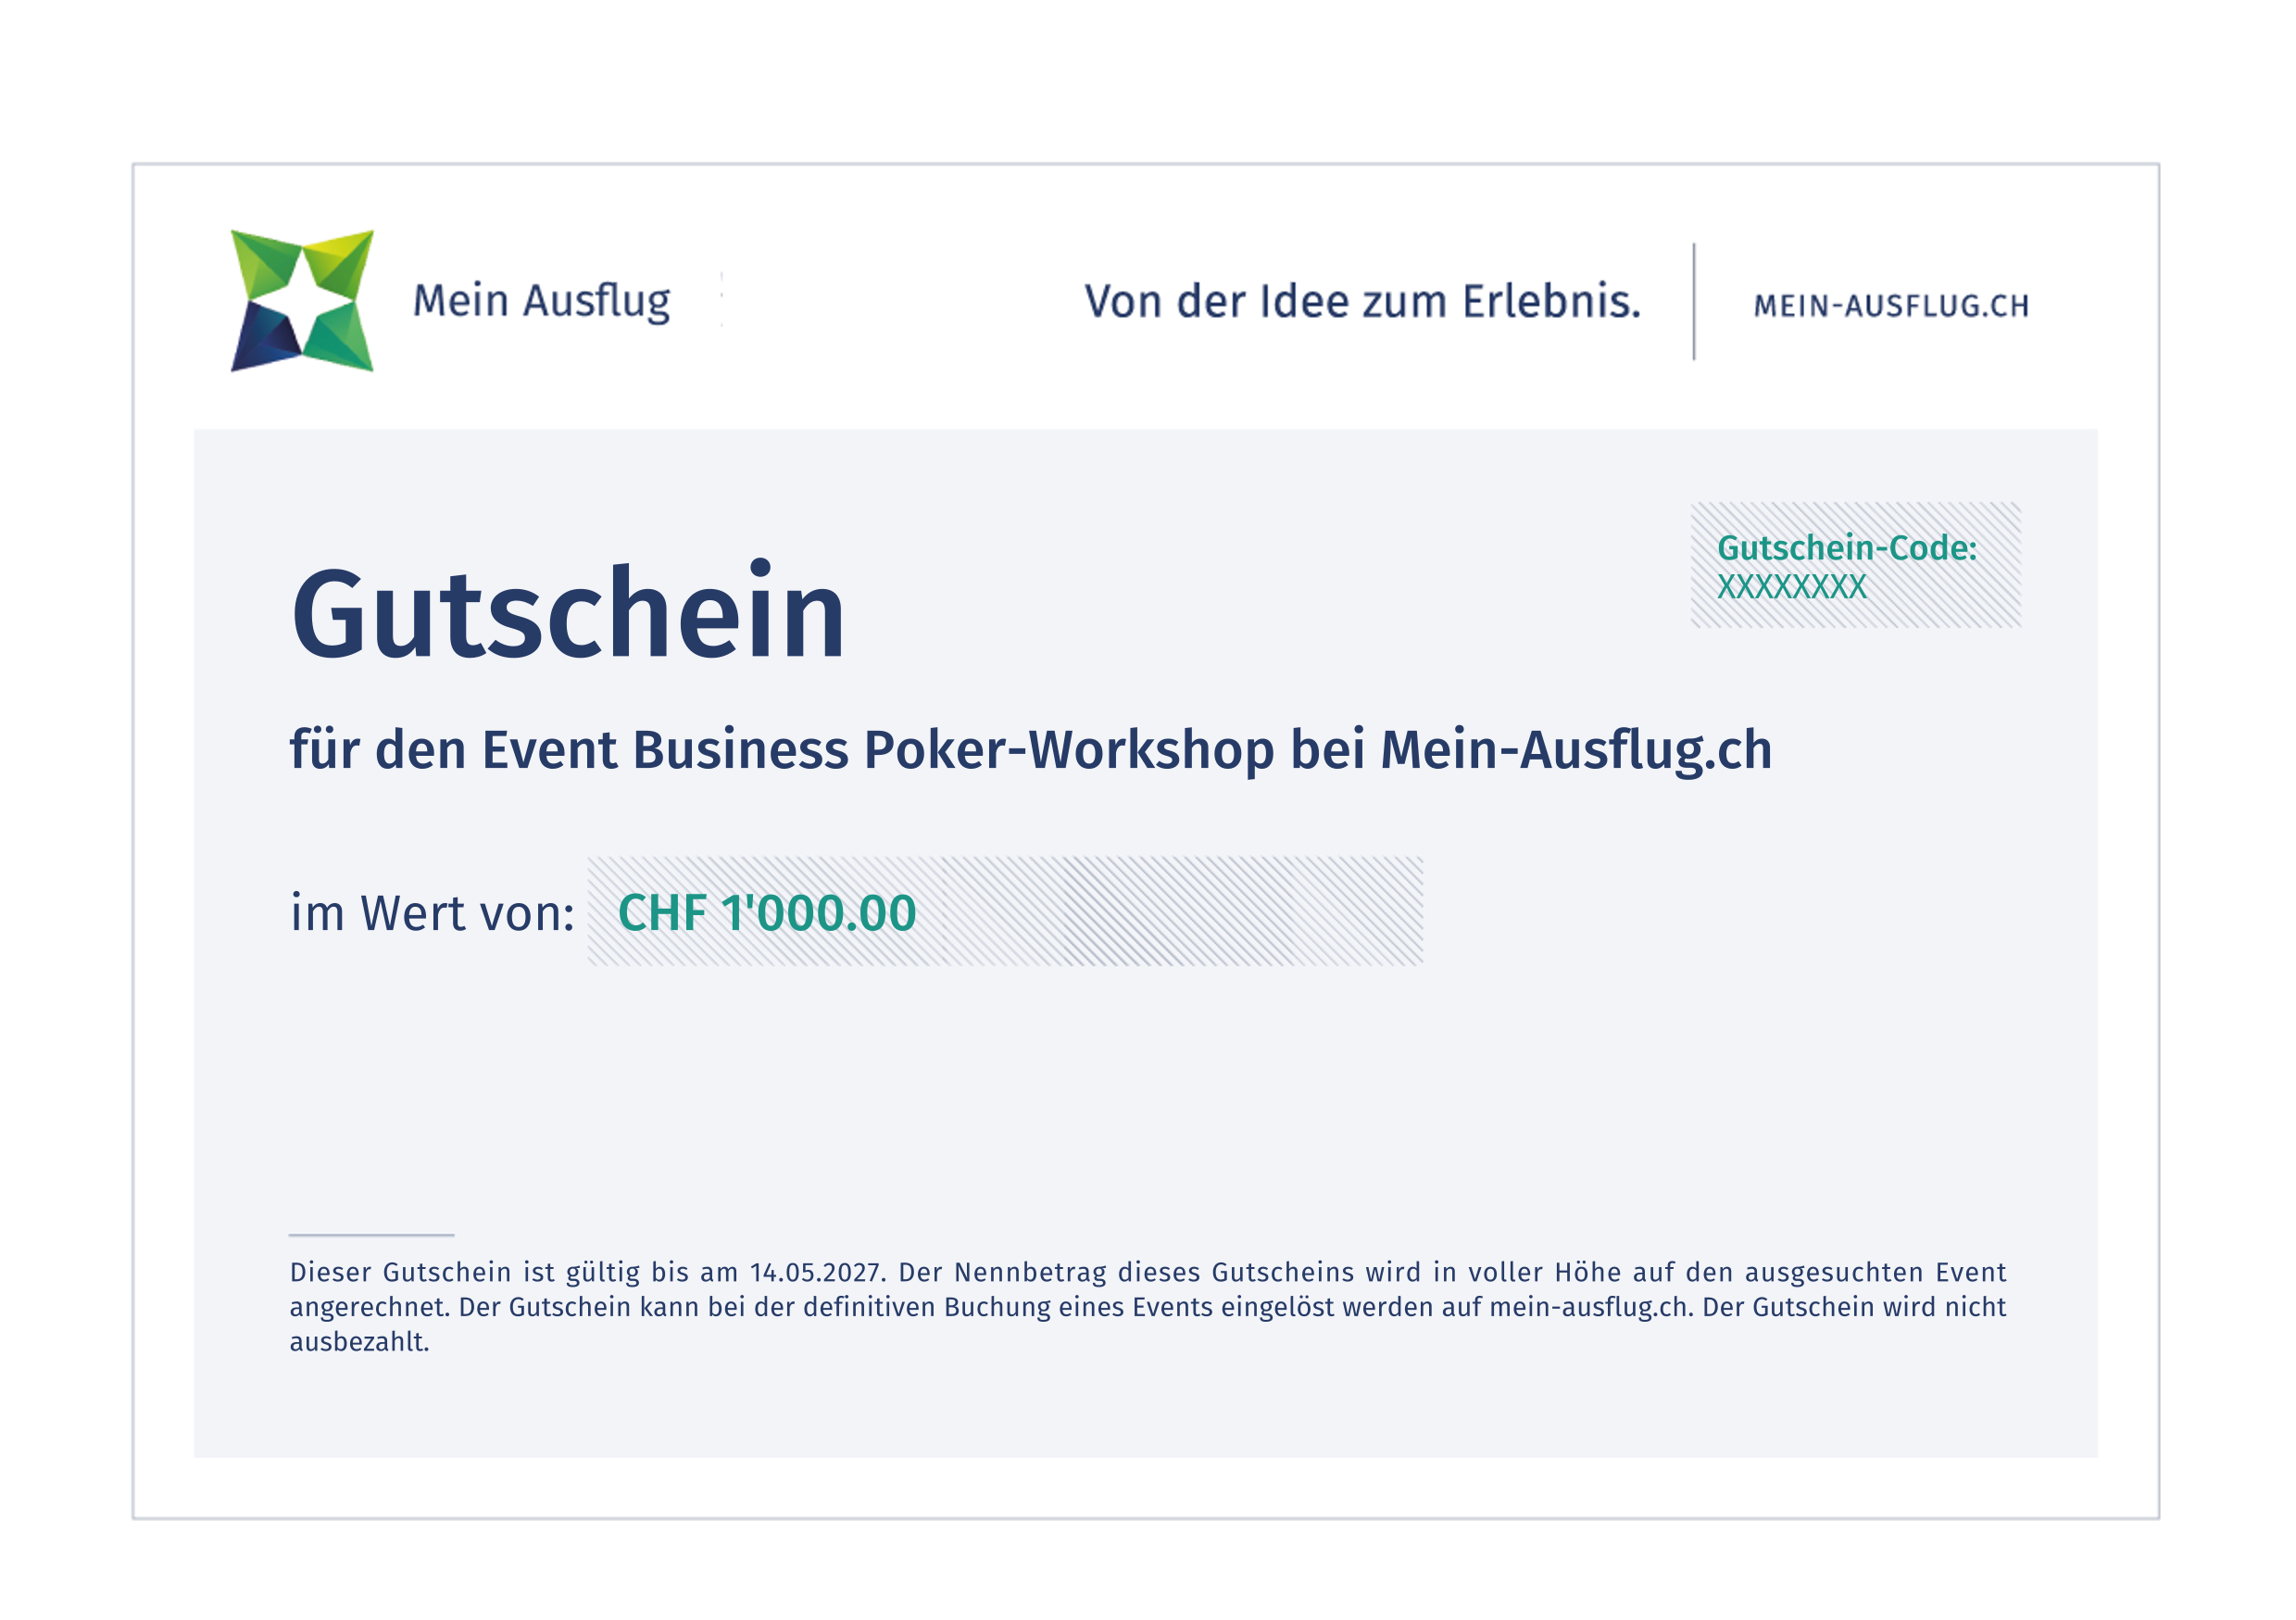 Business Poker-Workshop